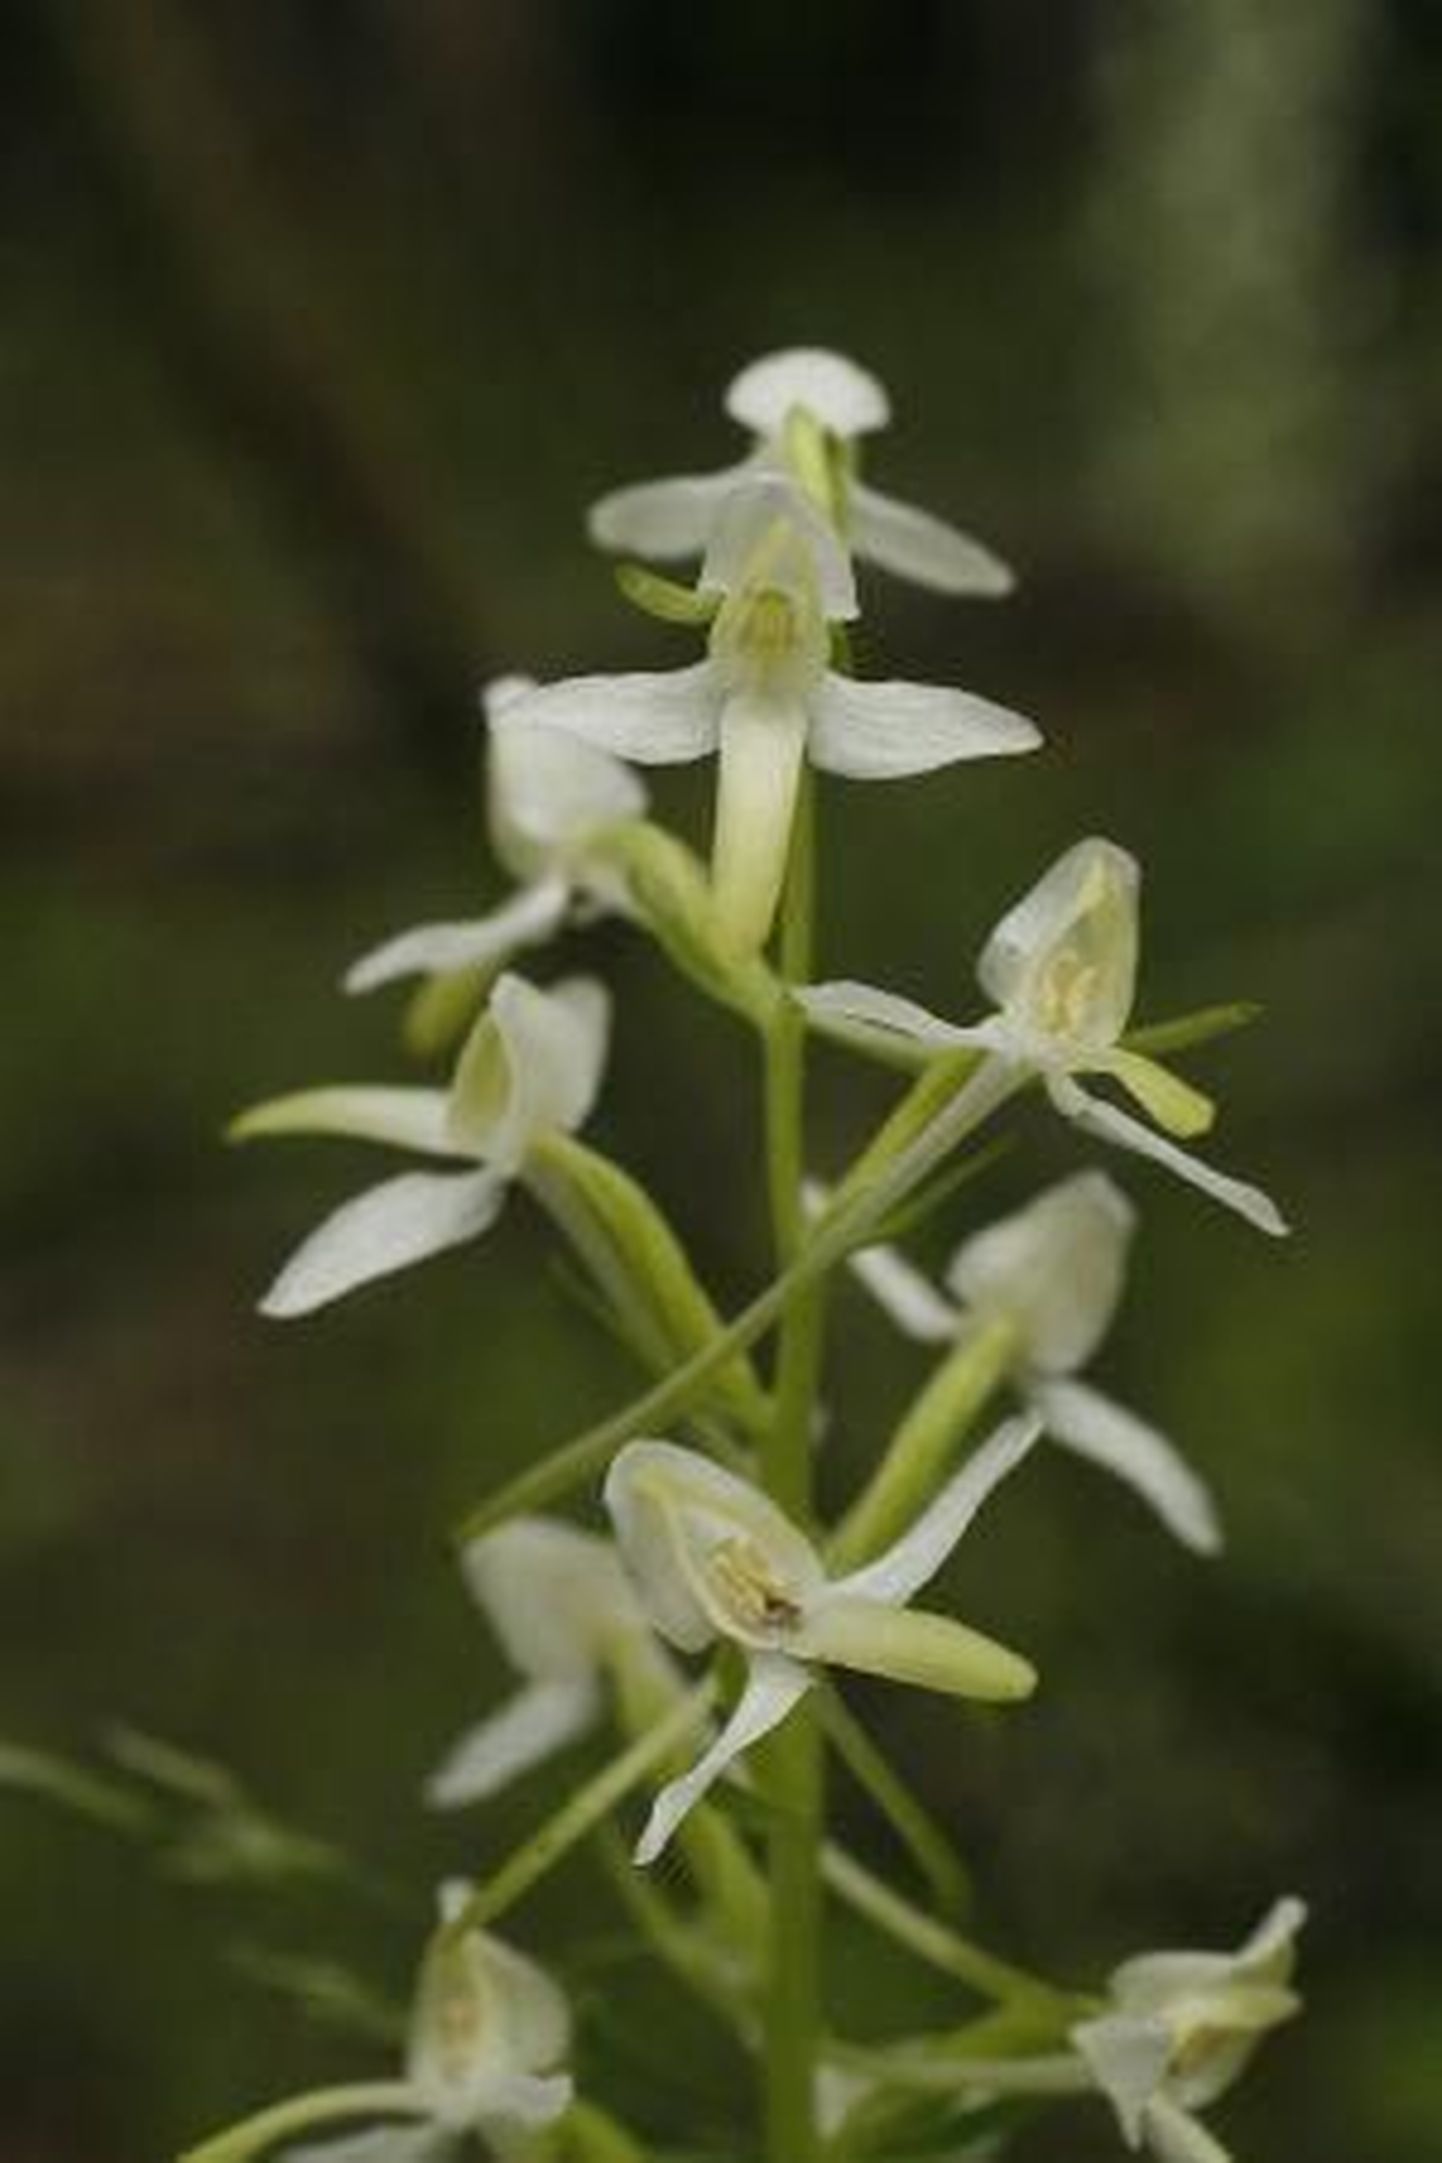 Eesti orhideekaitse klubi valis aasta orhideeks 2012 käokeele. Pildil kahelehine käokeel, mida kutsutakse ka ööviiuliks.